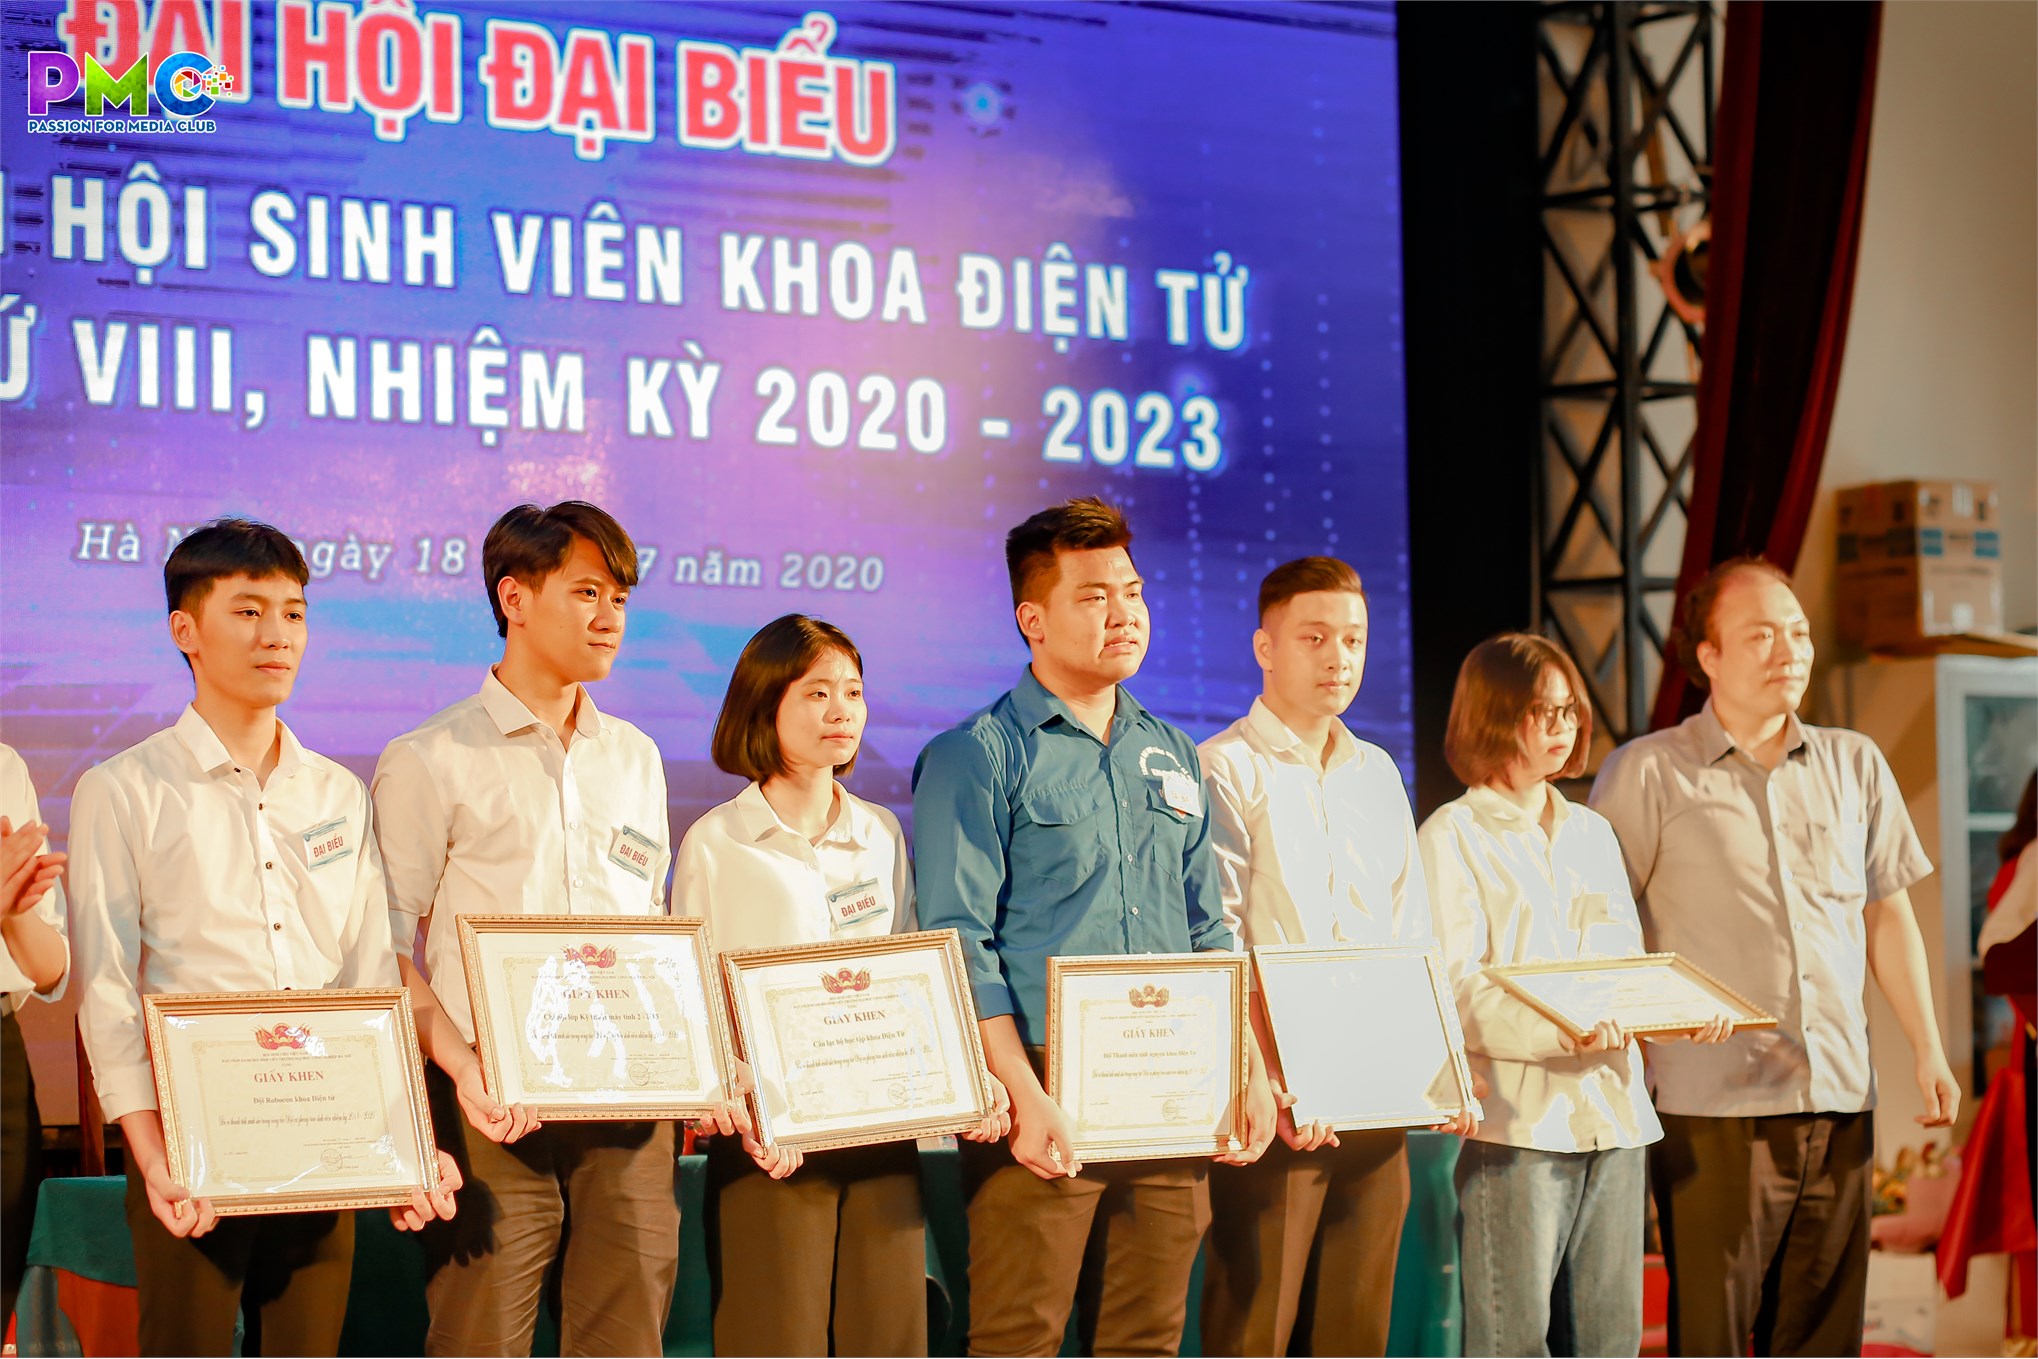 Đại hội đại biểu liên chi hội sinh viên khoa Điện tử lần thứ VIII nhiệm kỳ 2020 - 2023 diễn ra thành công tốt đẹp